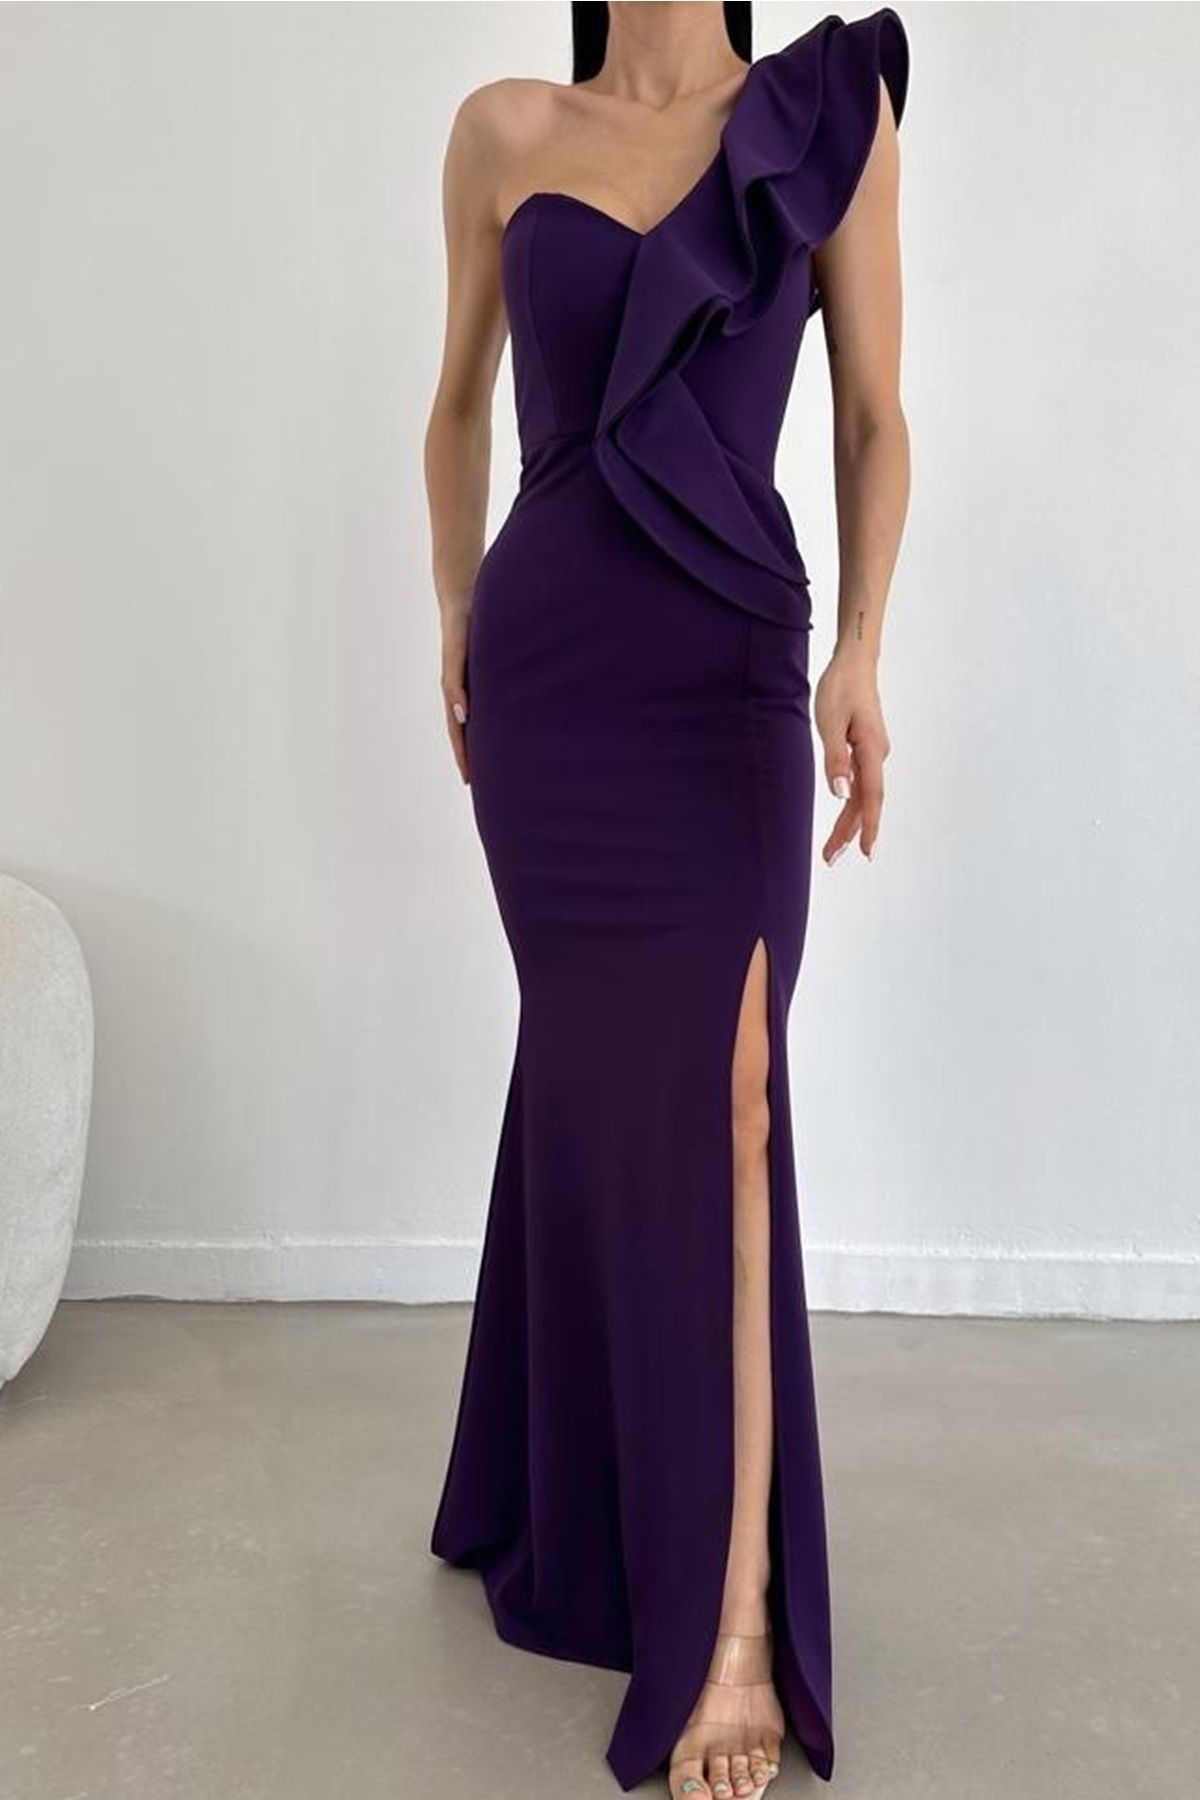 lovebox Esnek Krep Kumaş Tek Omuz Detaylı Mor Uzun Abiye Elbise Purple Maxi Prom Dress 024